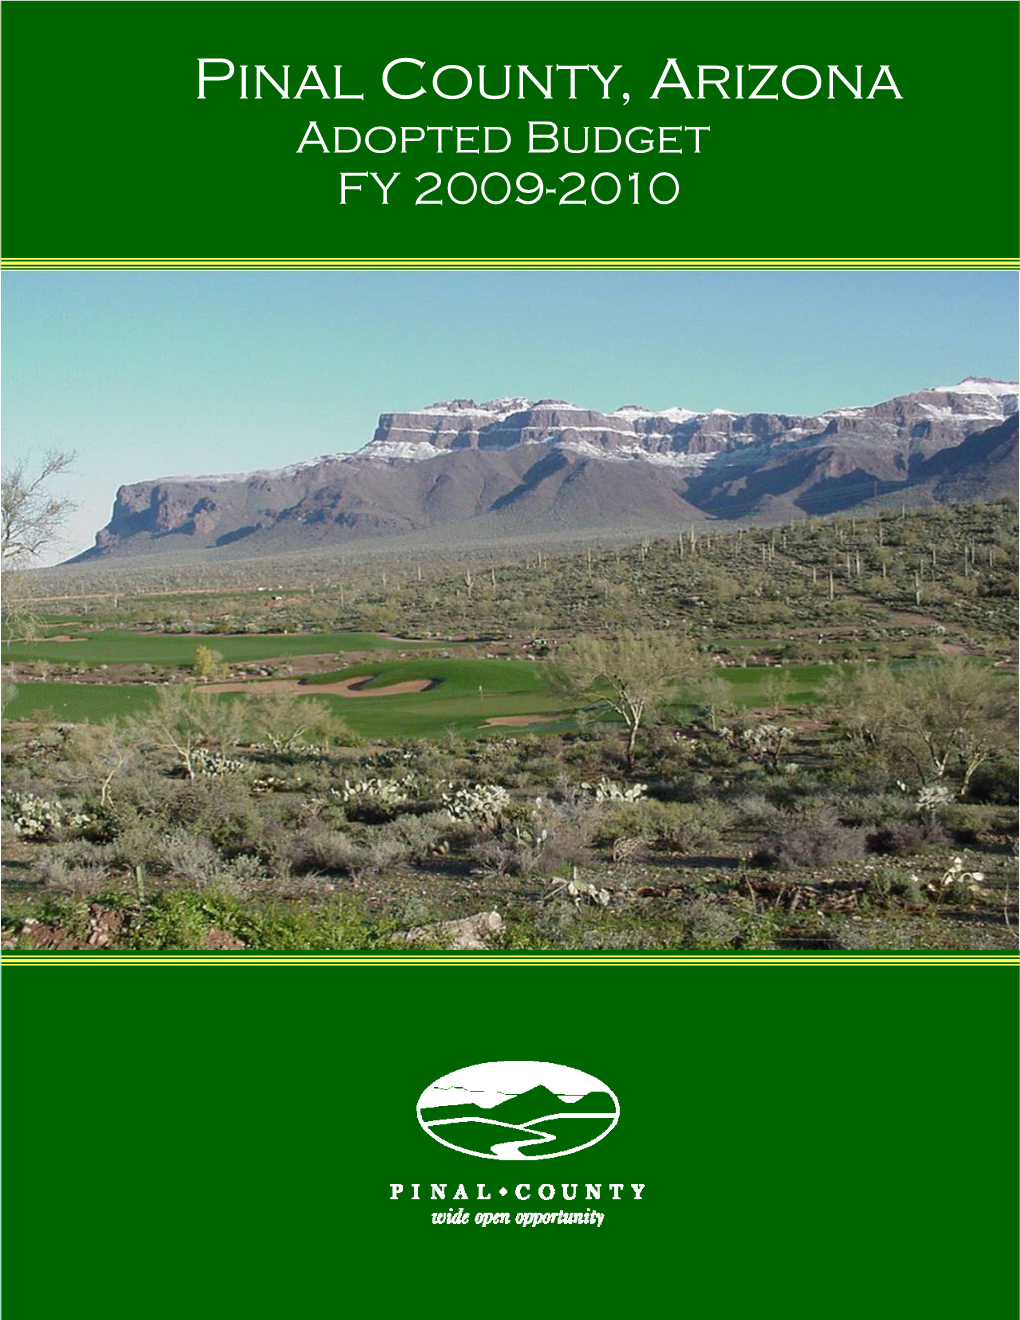 Pinal County, Arizona Adopted Budget FY 2009-2010 PINAL COUNTY, ARIZONA GFOA AWARD 2009-2010 ADOPTED BUDGET